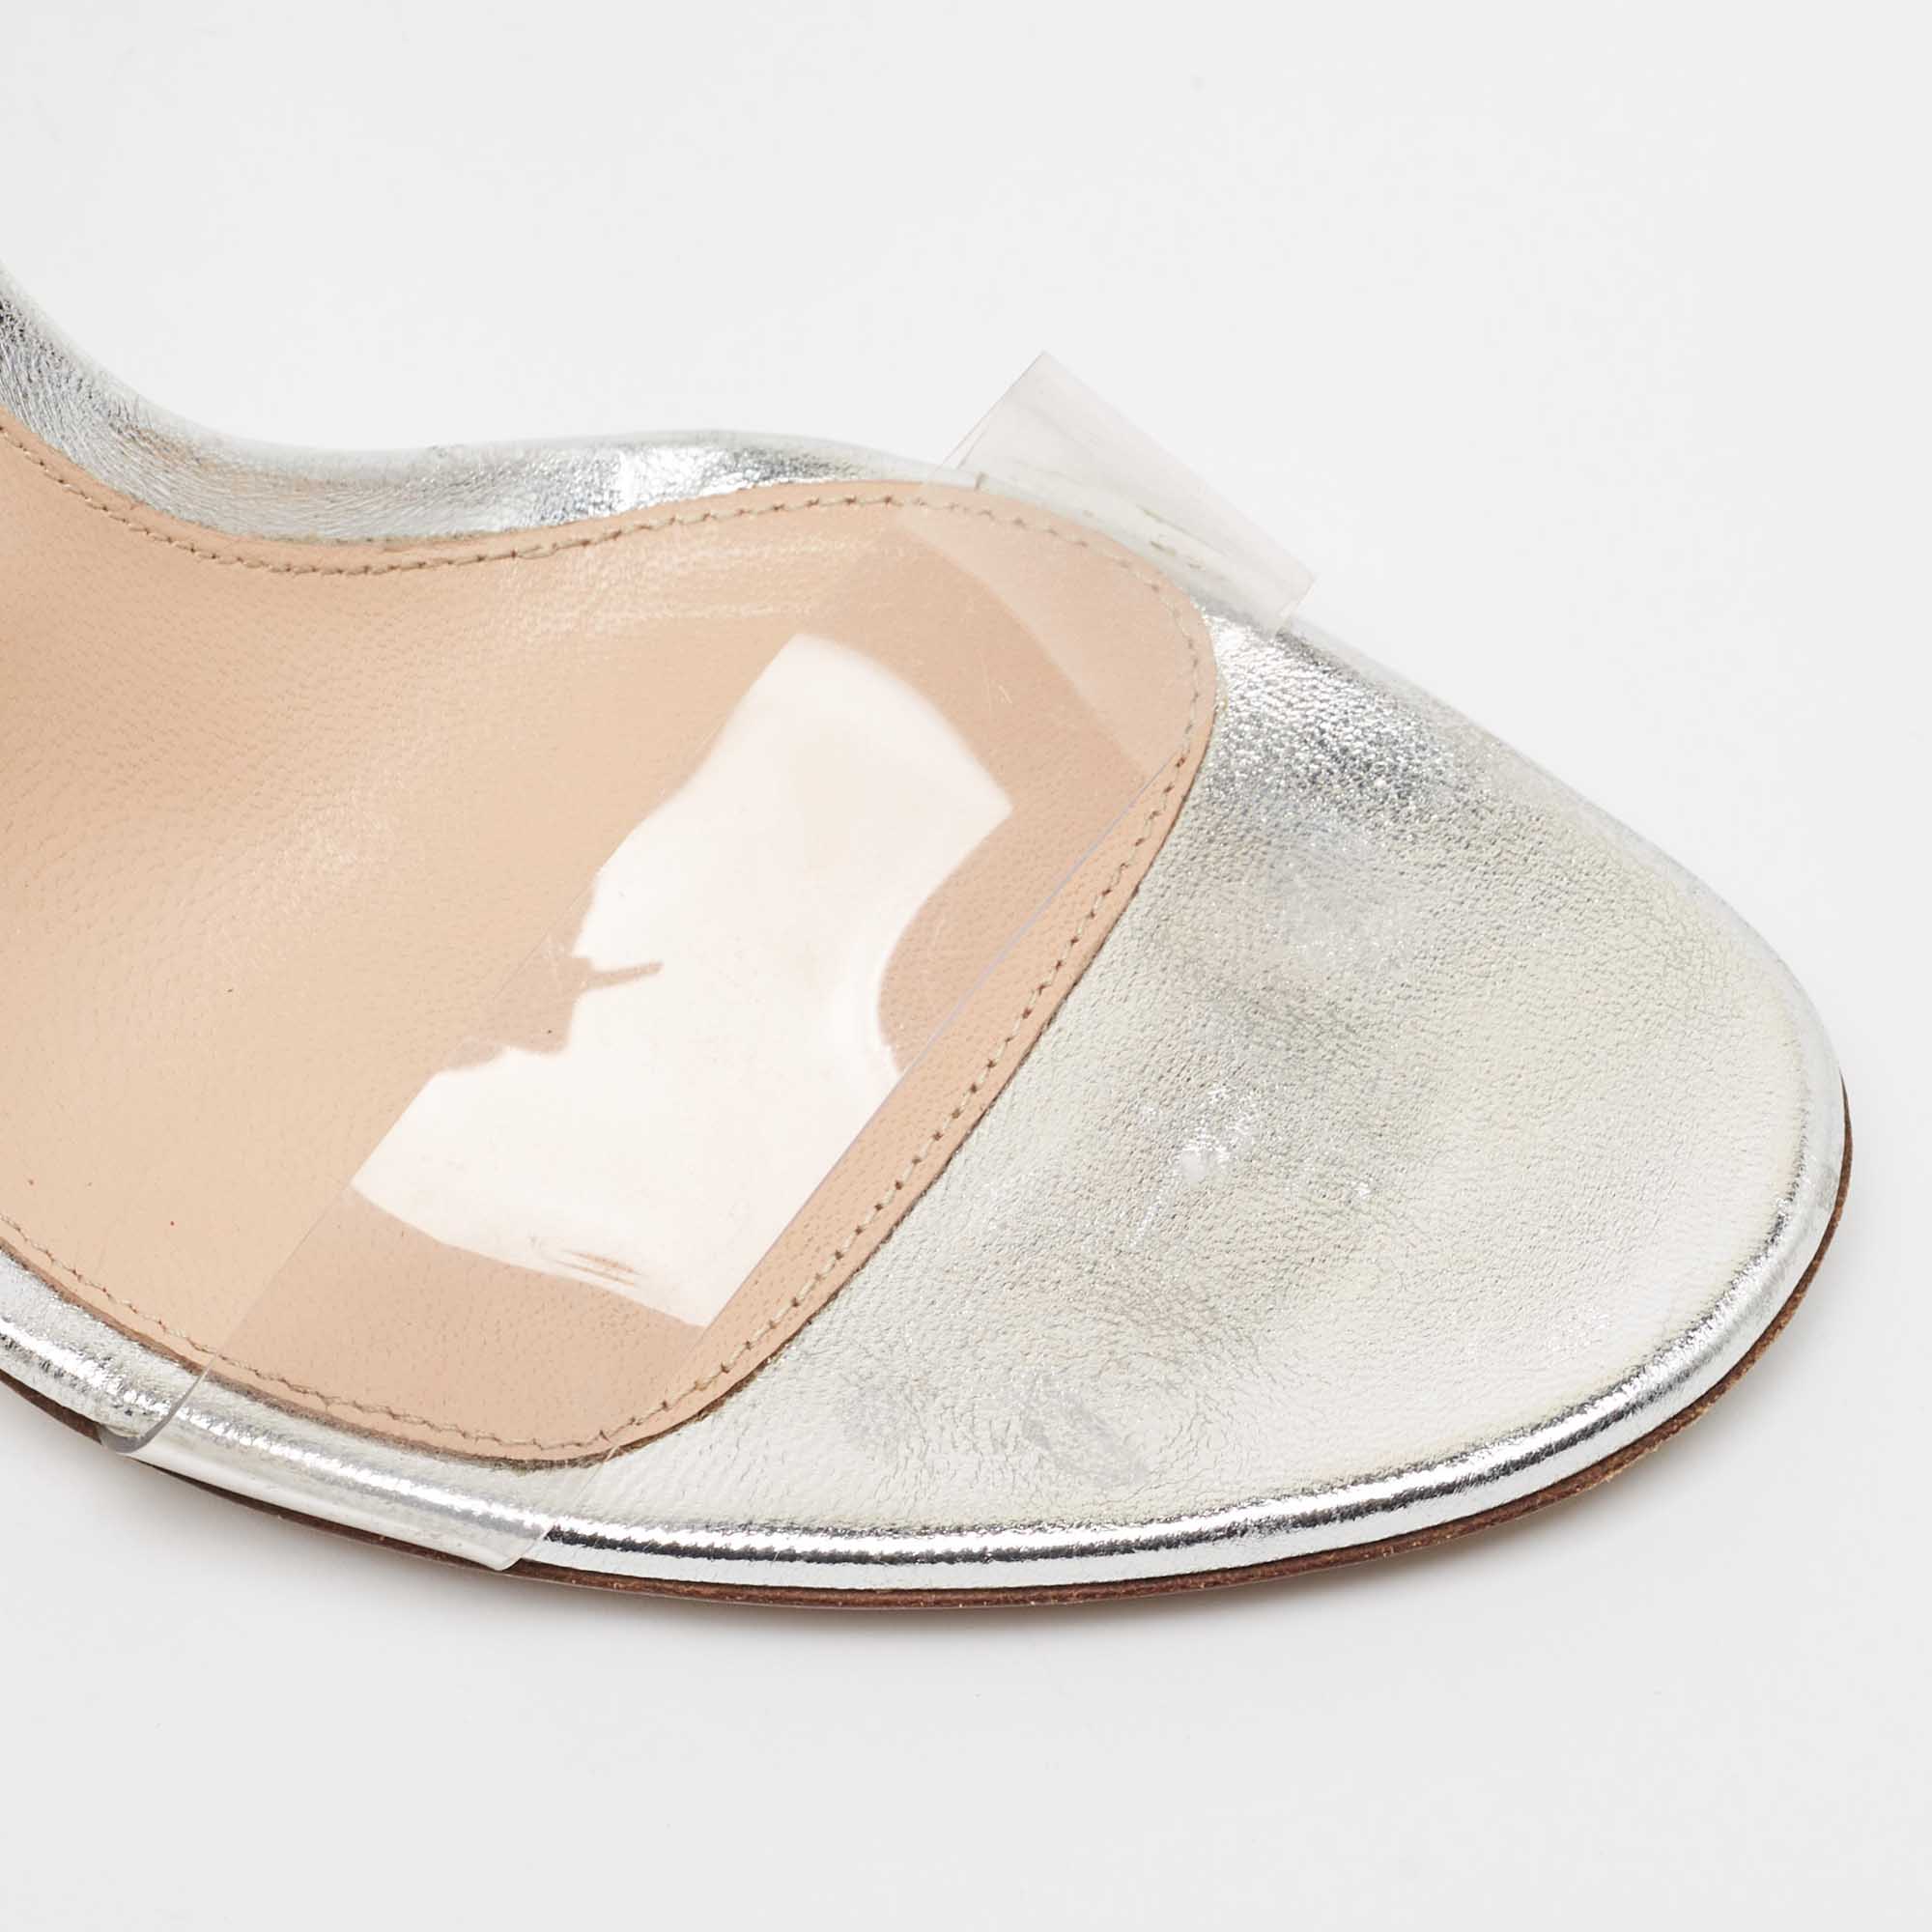 Gianvito Rossi Metallic Silver Leather And PVC Portofino Ankle Strap Sandals Size 38.5